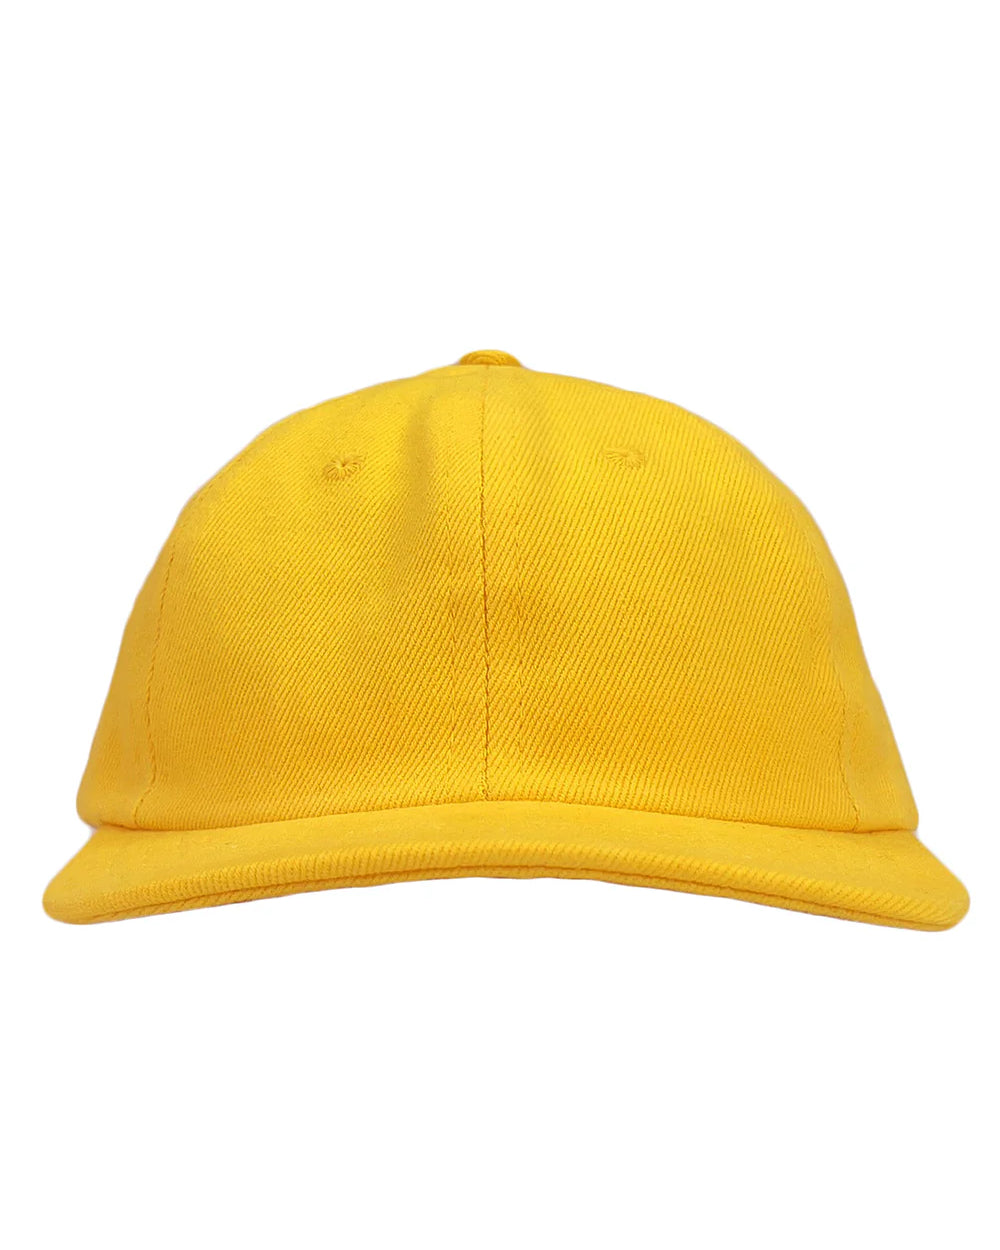 Chenga Twill Cap - Sunshine Yellow